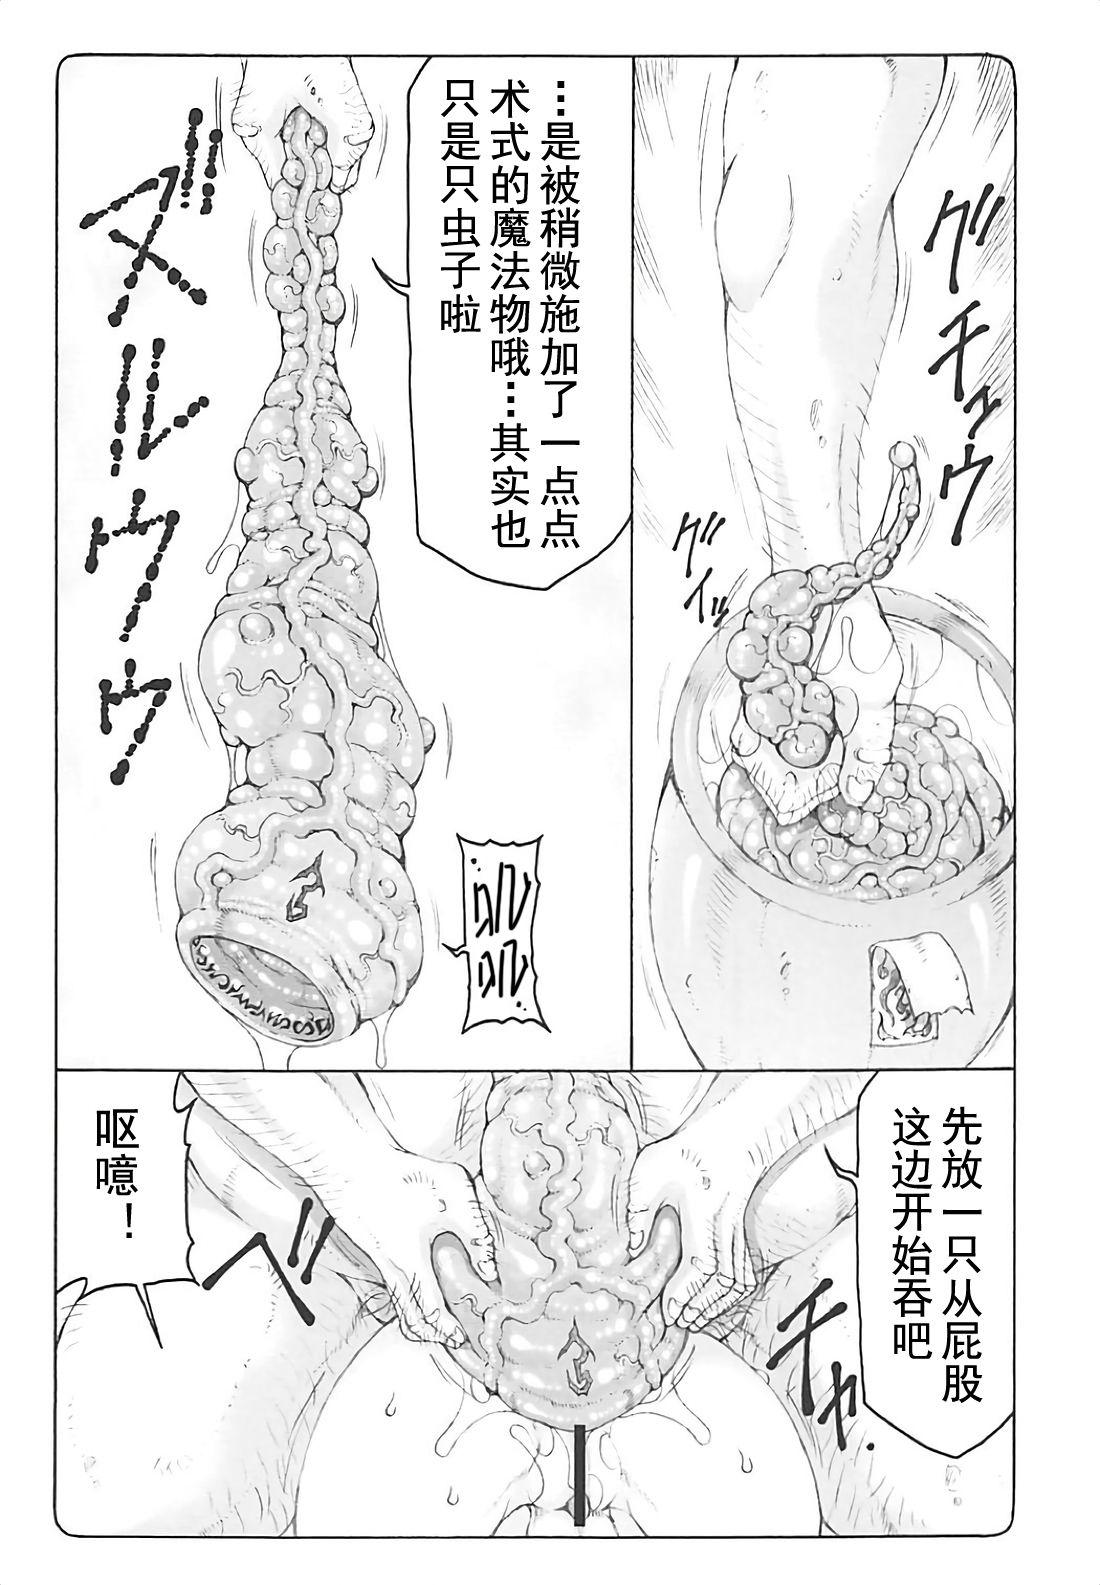 Massage Creep Kotori 15 - Fate stay night Bigdick - Page 7